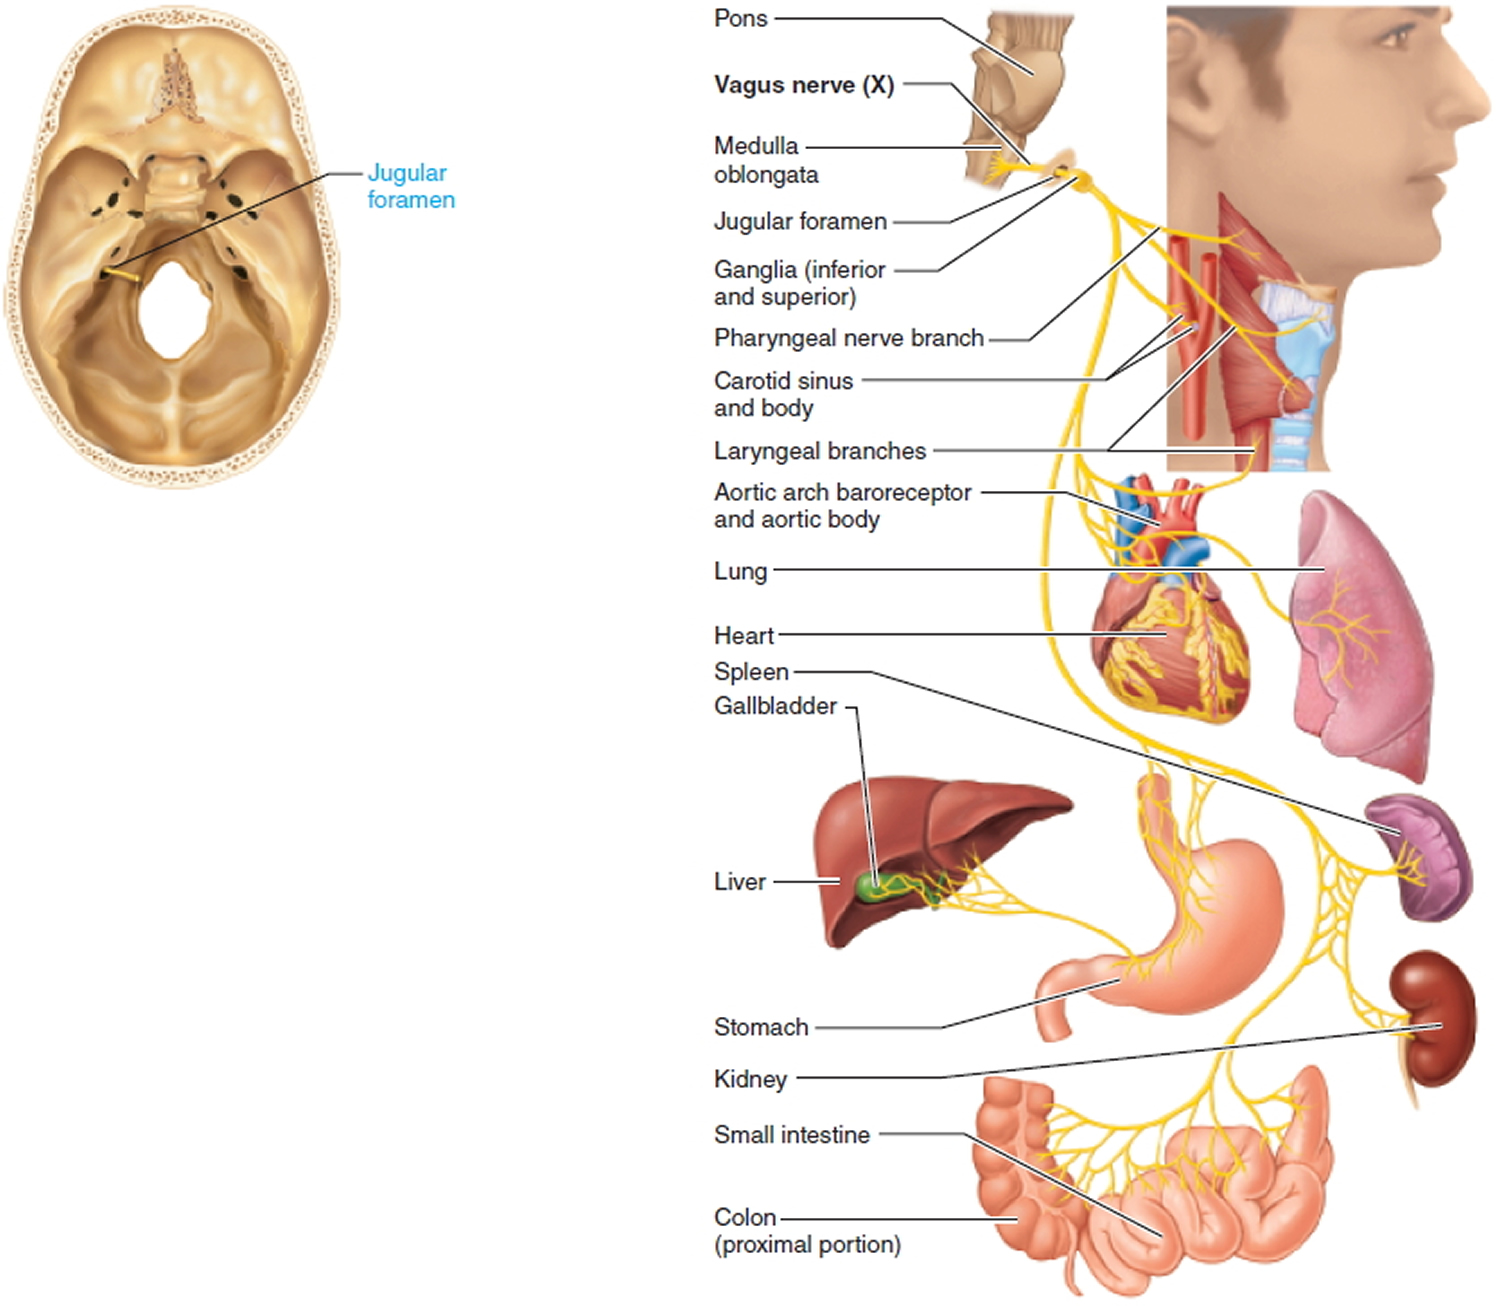 vagus nerve - cranial nerve 10